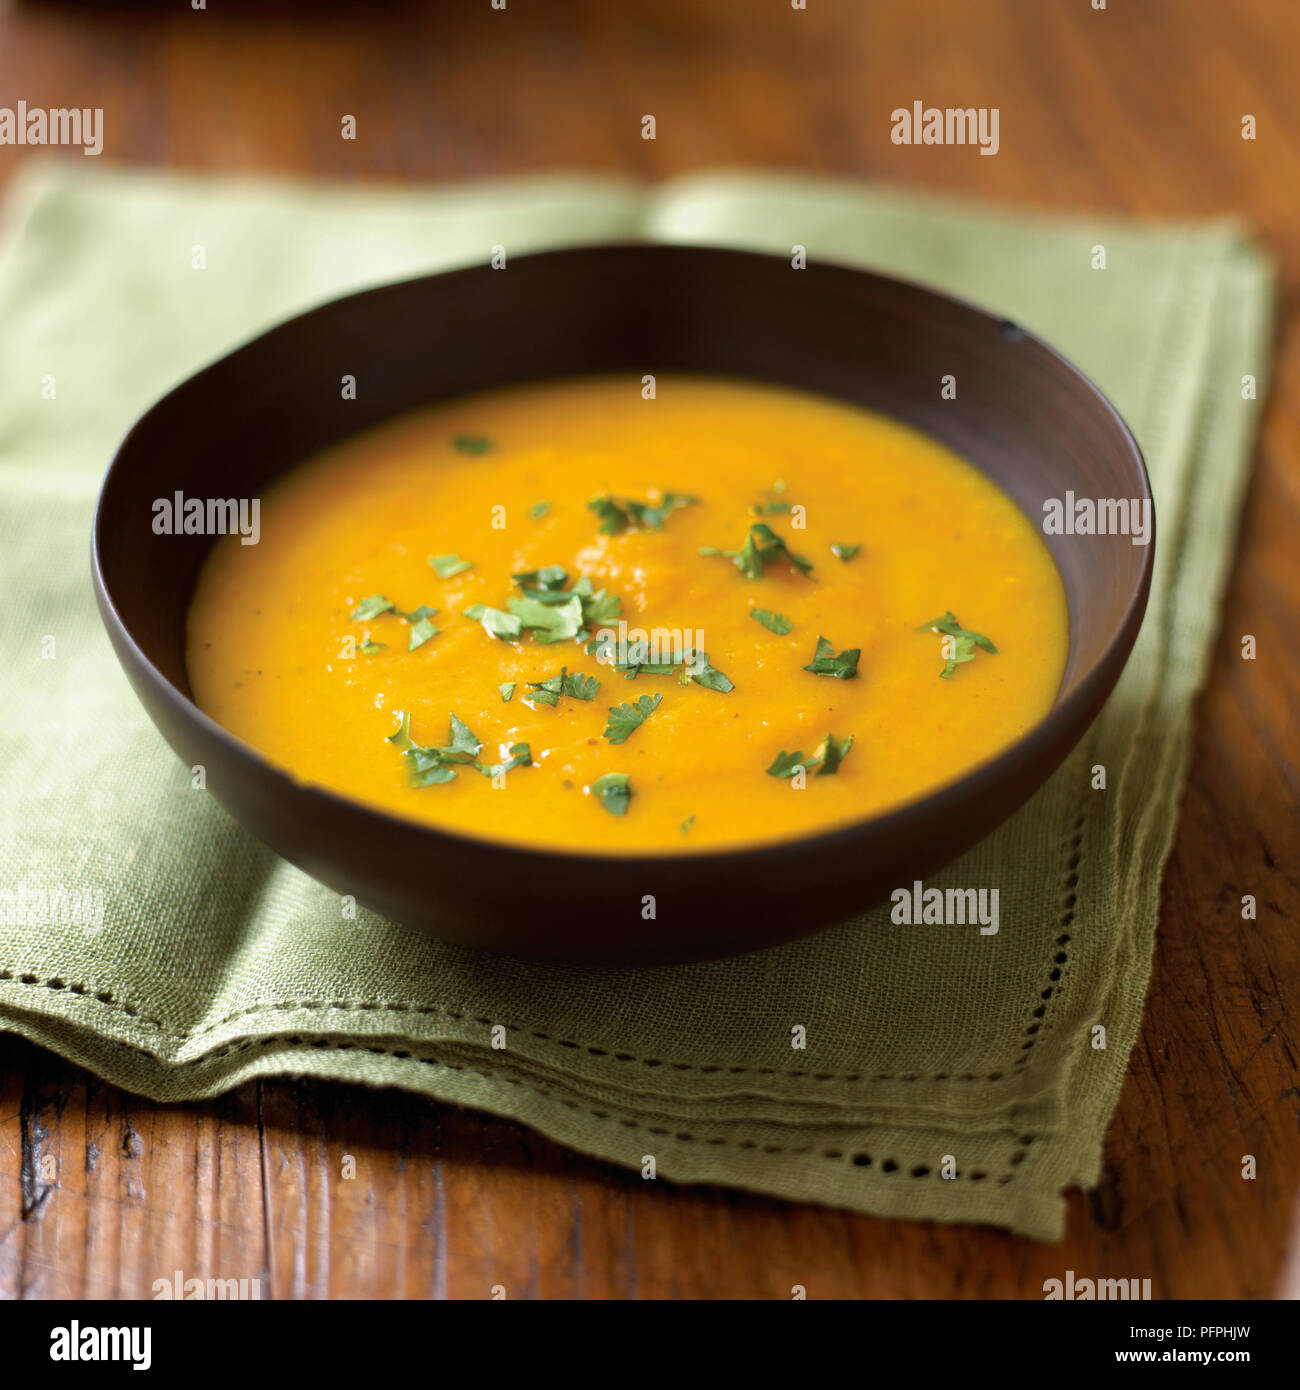 La carota e la zuppa di arancia guarnito con coriandolo servito in tazza marrone sul tovagliolo verde, close-up Foto Stock